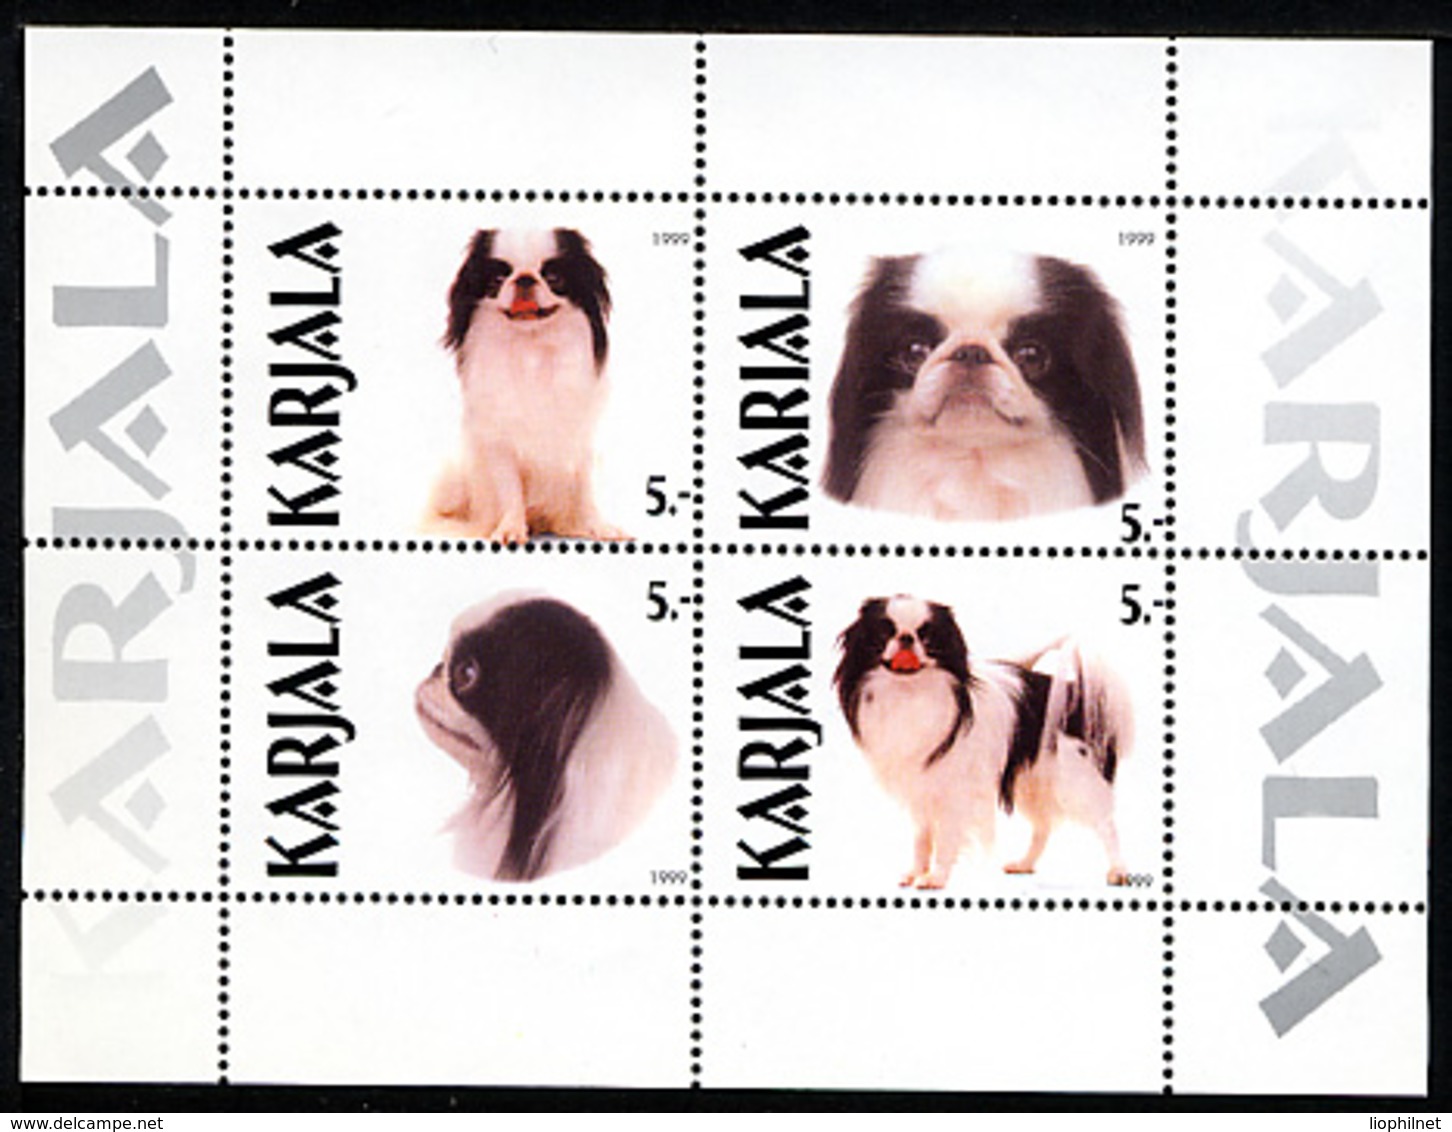 CARELIE KARELIA 1999, CHIENS / DOGS, Feuillet De 4 Valeurs, NEUFS / MINT. R1319 - Vignettes De Fantaisie